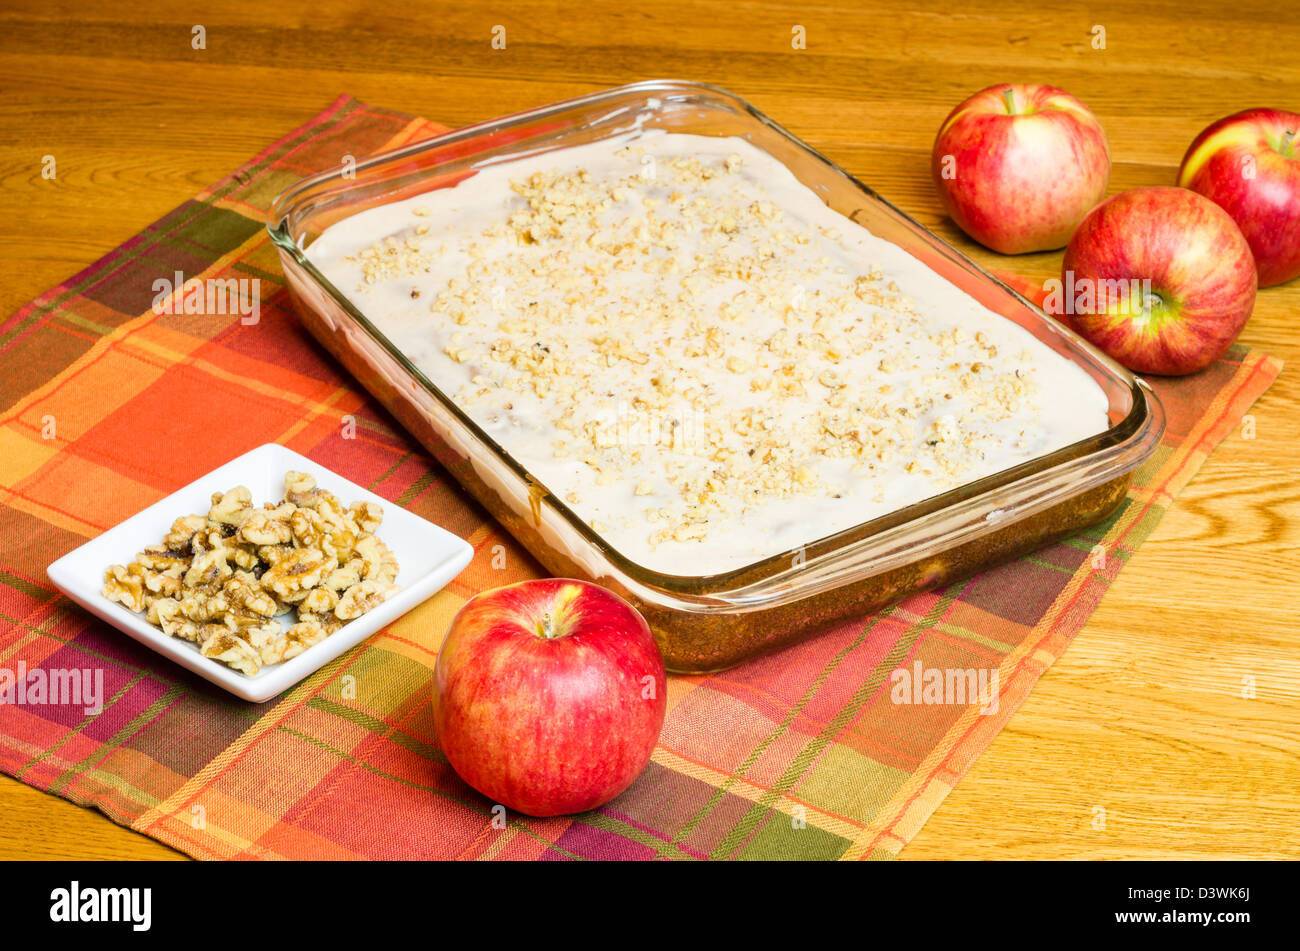 Ein Apfelkuchen mit einem Teller mit Walnüssen und Äpfeln Stockfoto